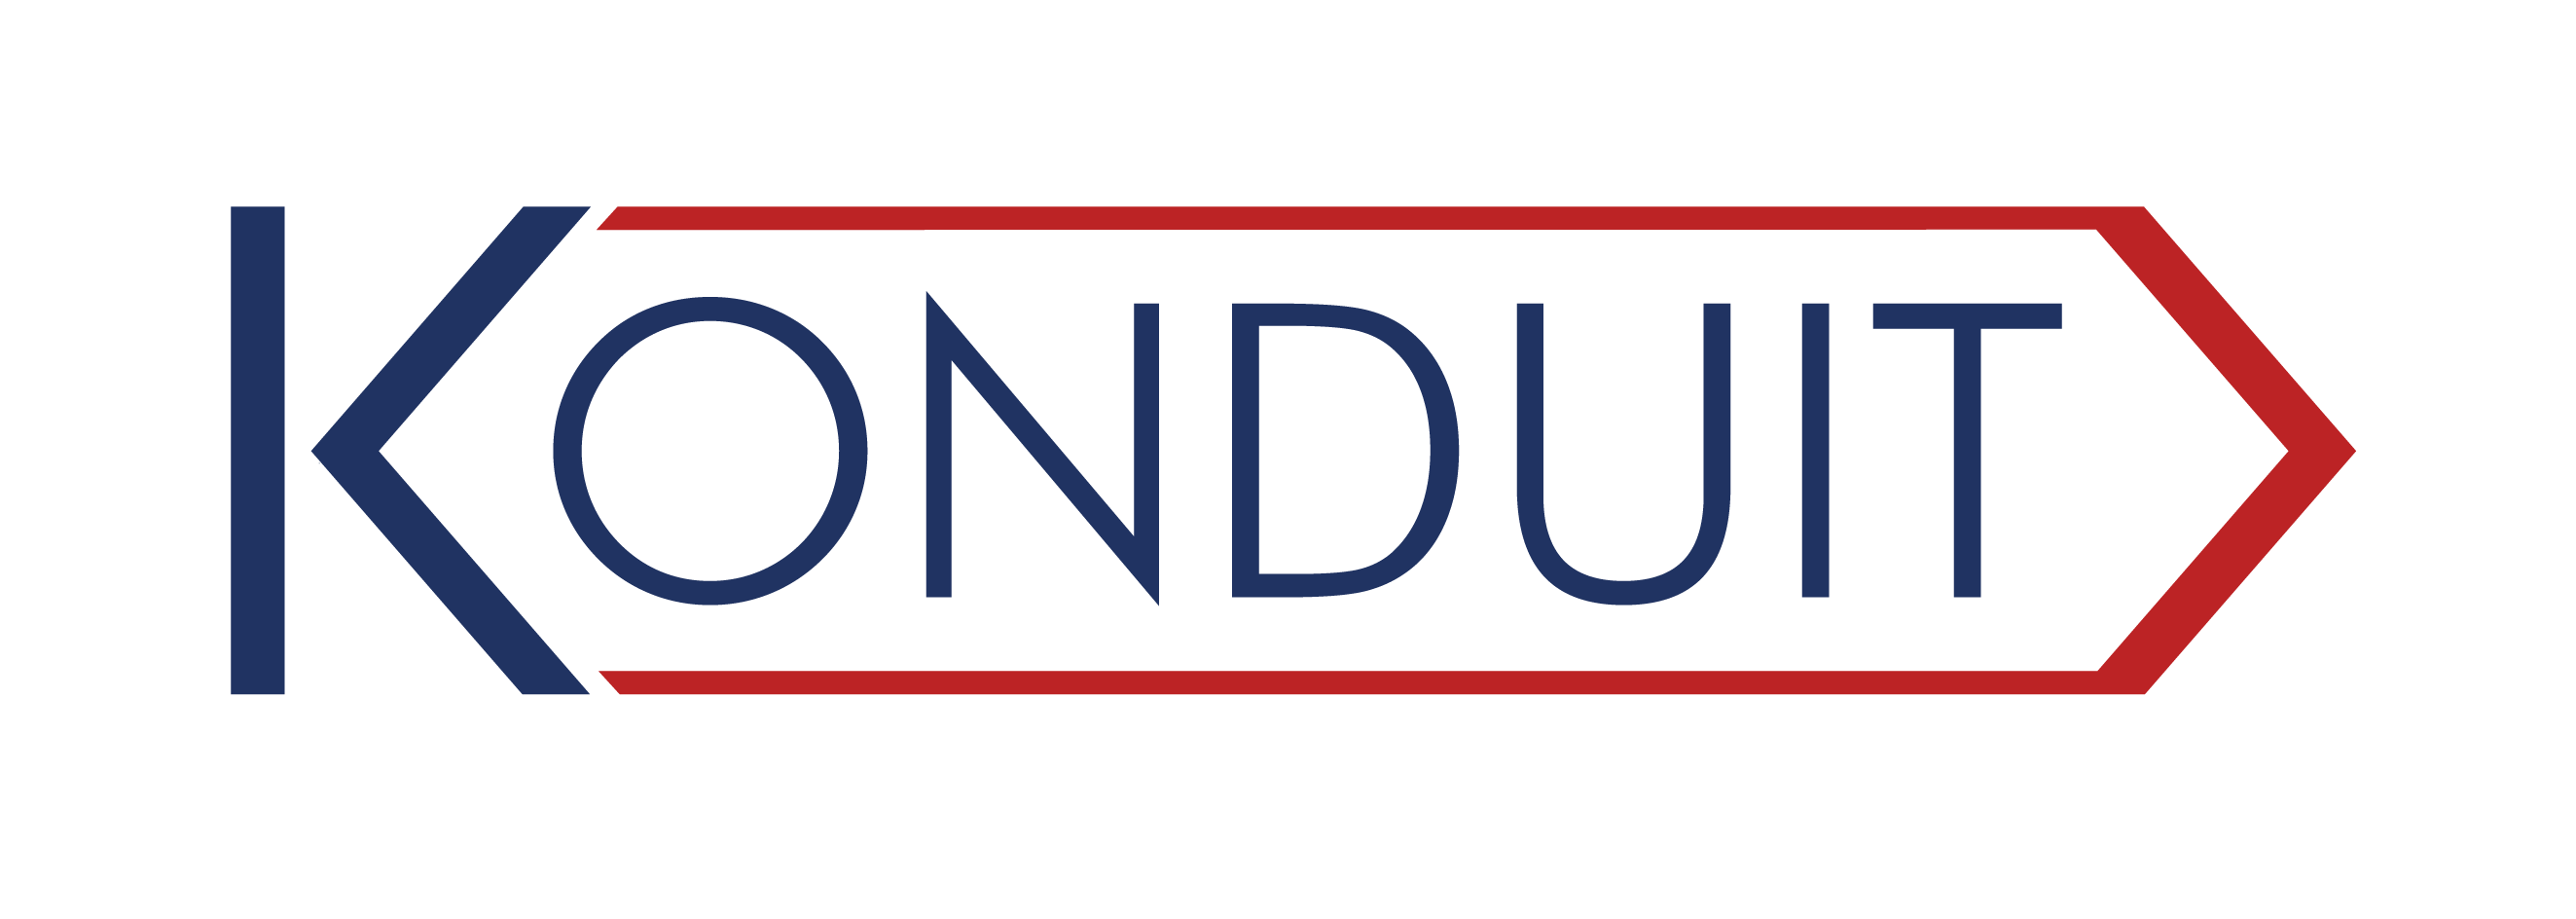 Konduit_logo refresh_FINAL CMYK